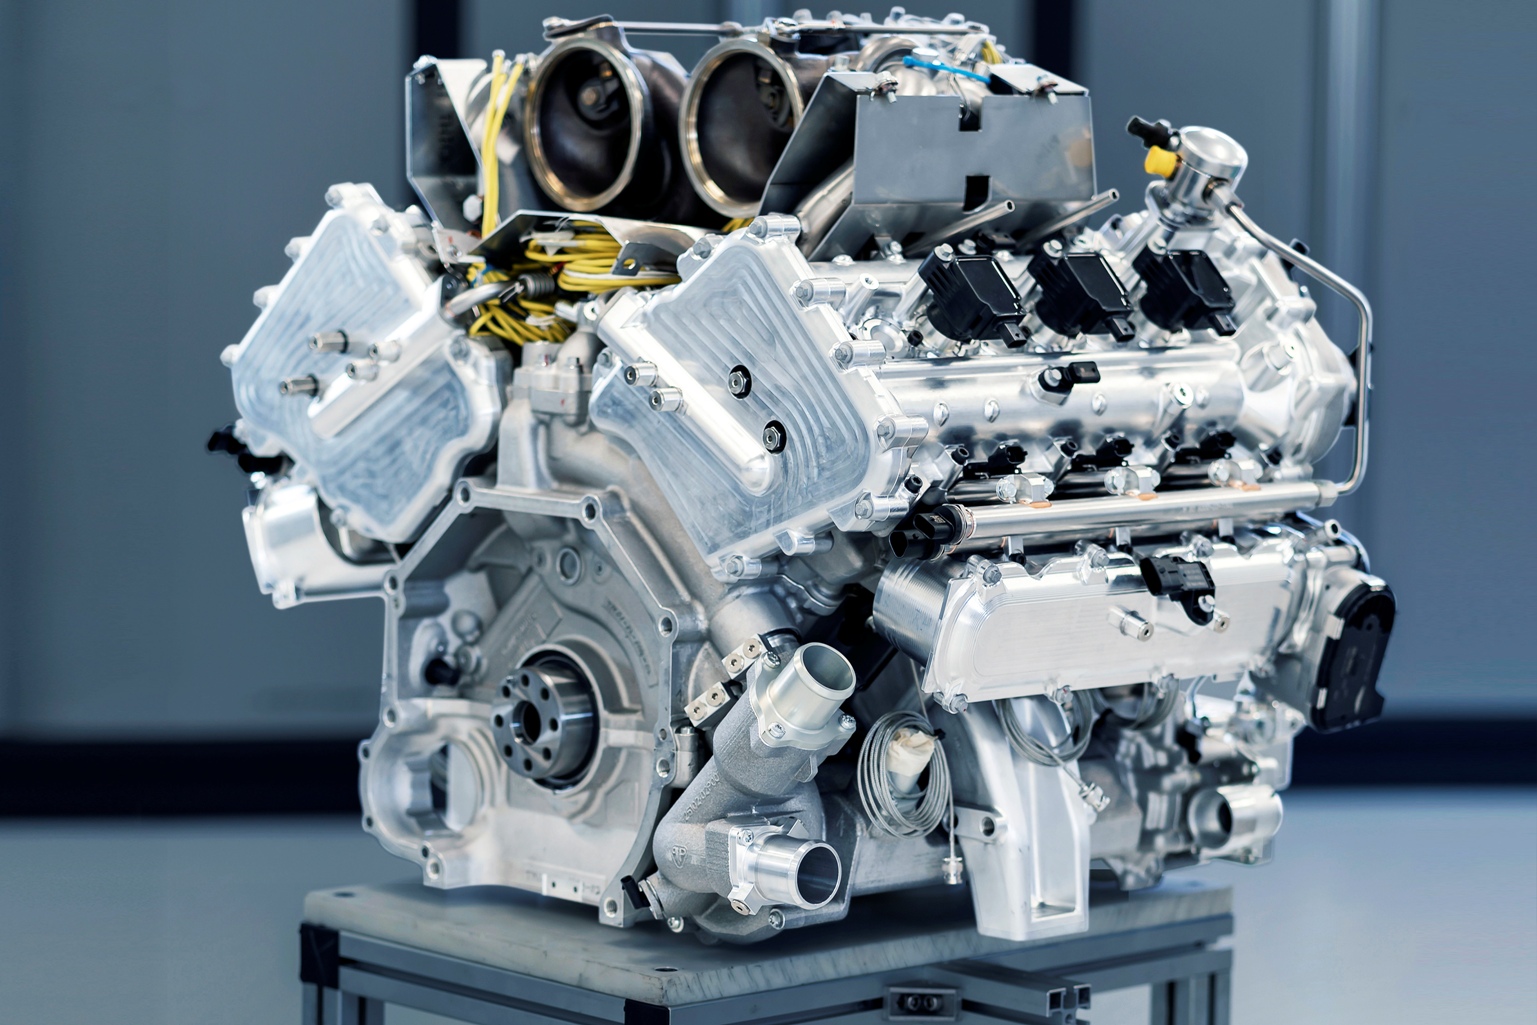 New 3.0-Litre V6 Aston Martin-Designed Engine Set for Debut in Valhalla